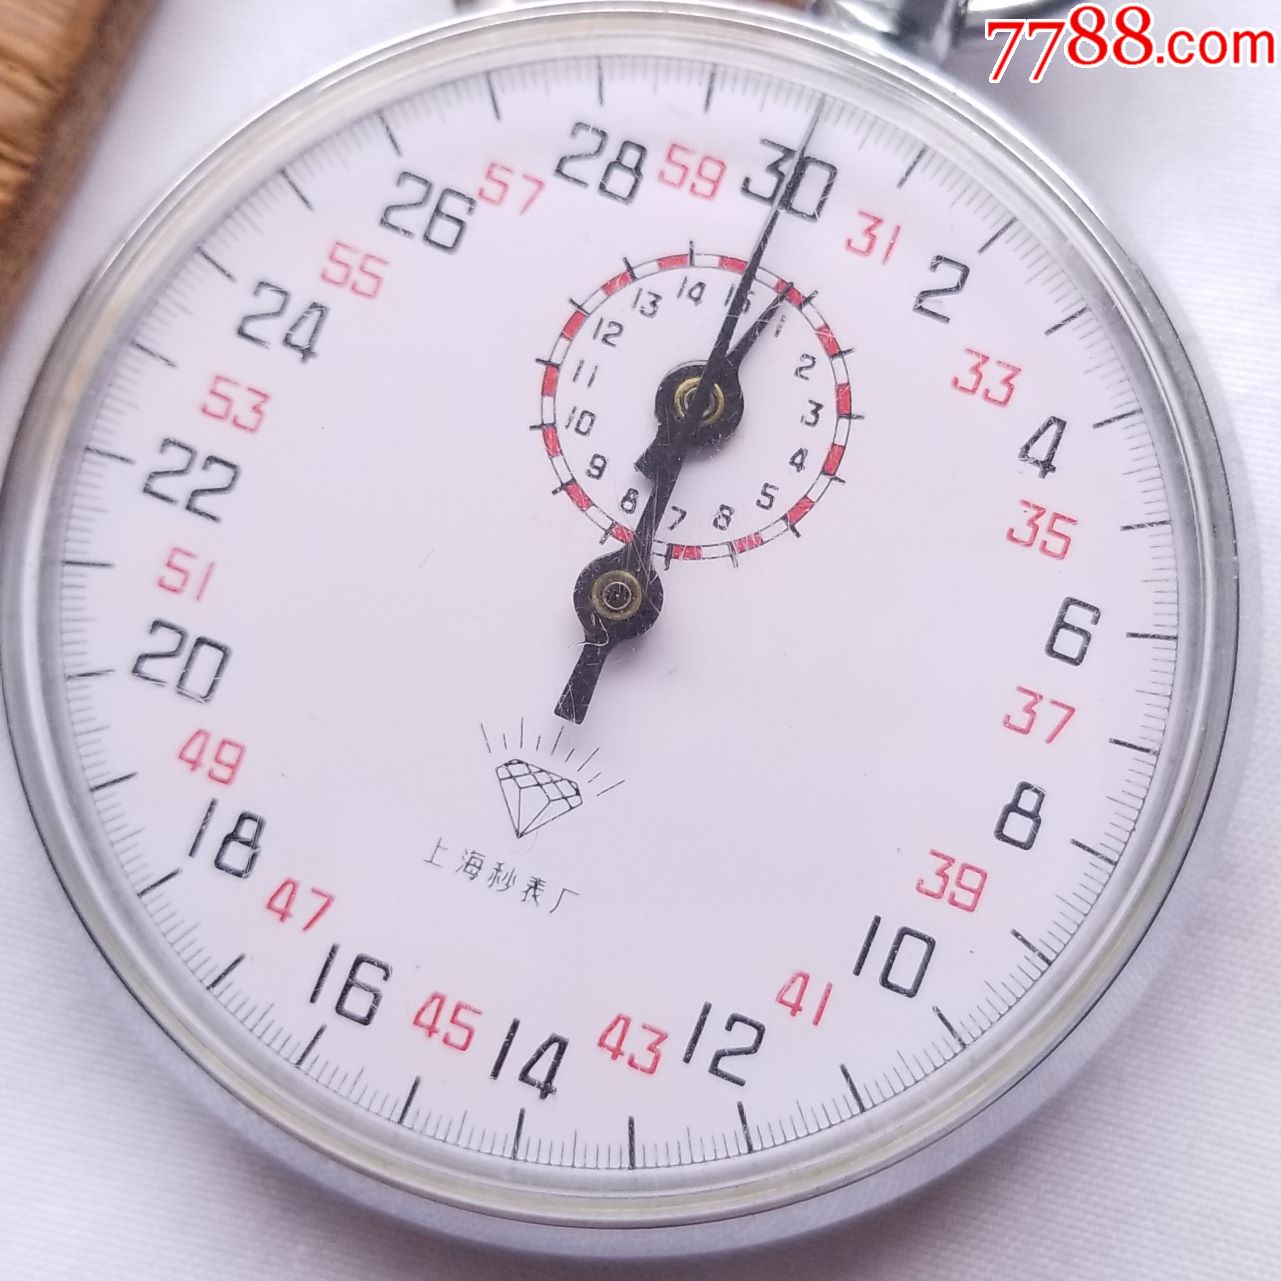 上海秒表厂-快速归位码-秒表计时-手动机械秒表